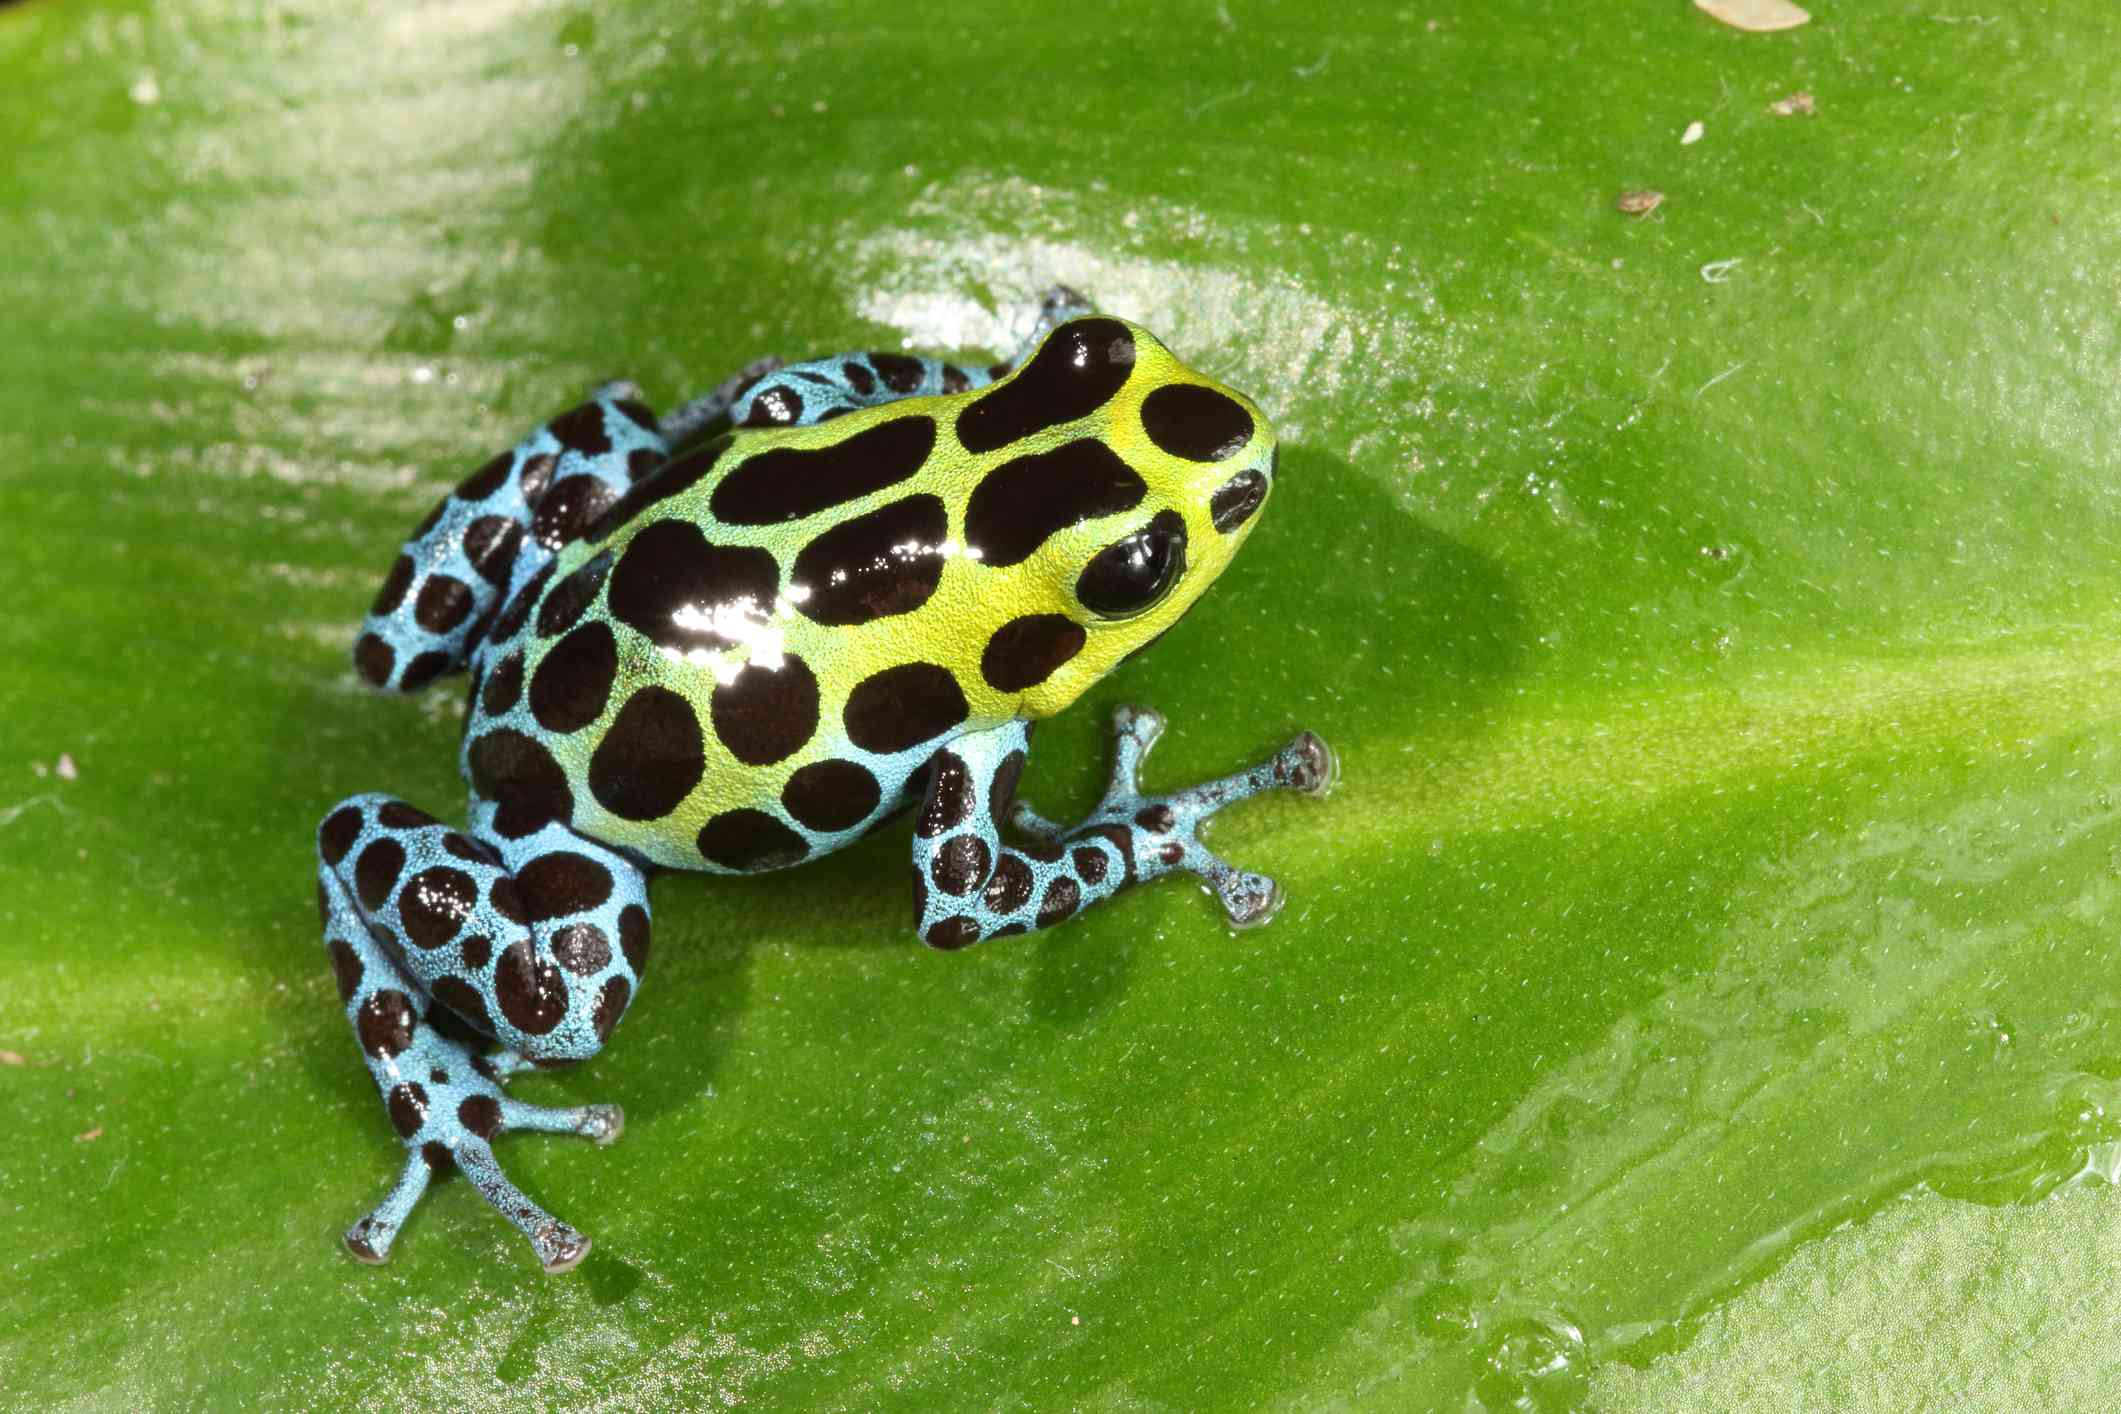 变量的蓝色的腿和绿色的身体毒蛙被黑色圆点花纹覆盖它坐落在一个大的绿叶。”width=